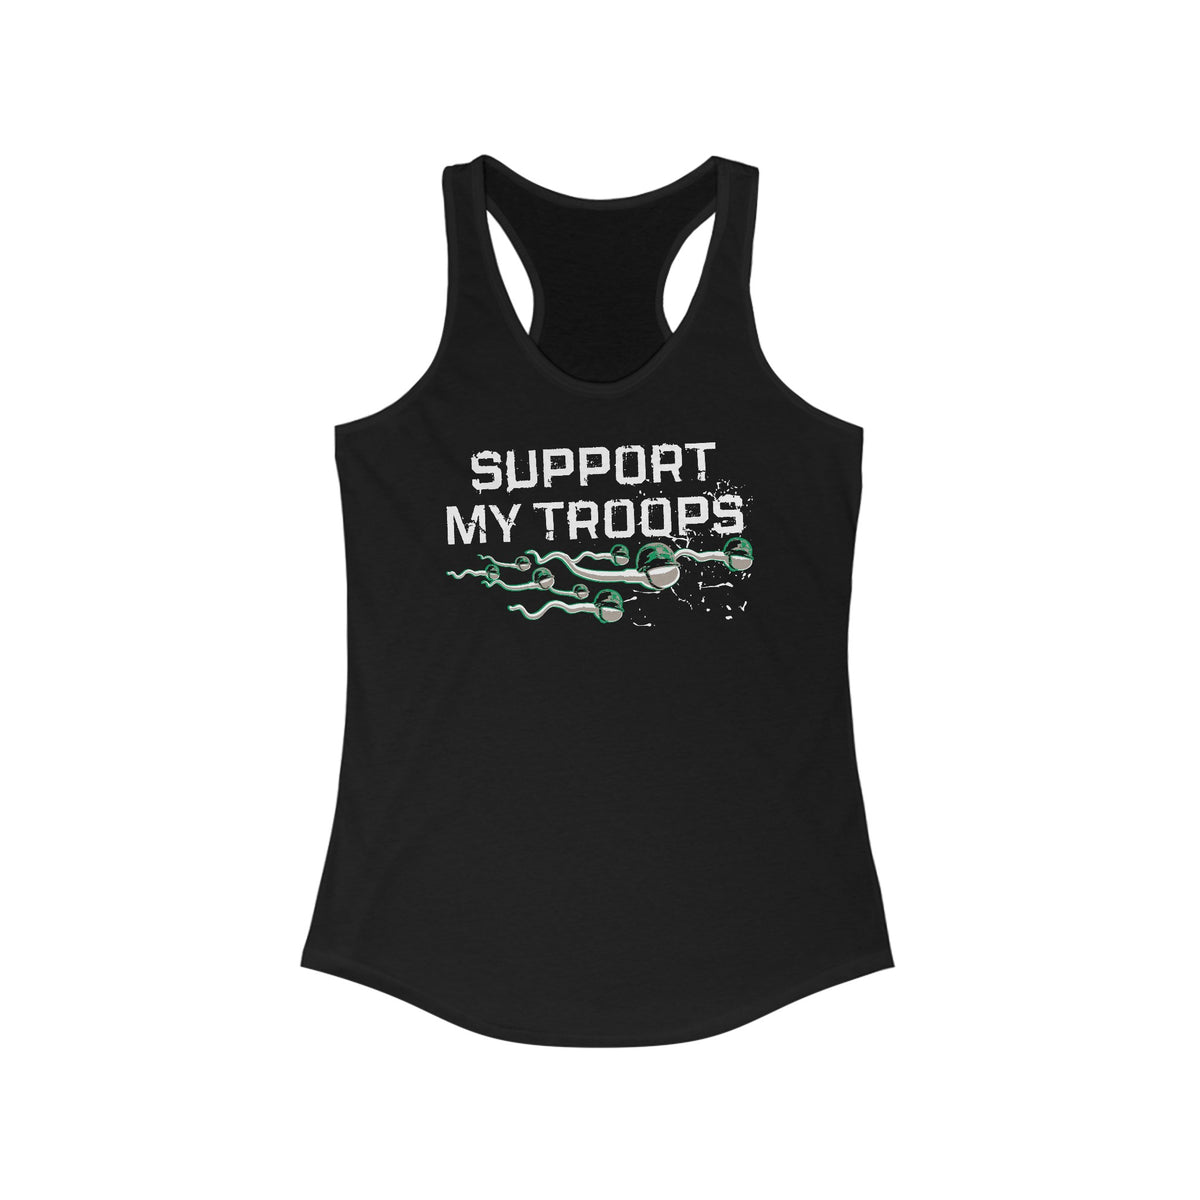 Support My Troops - Women's Racerback Tank